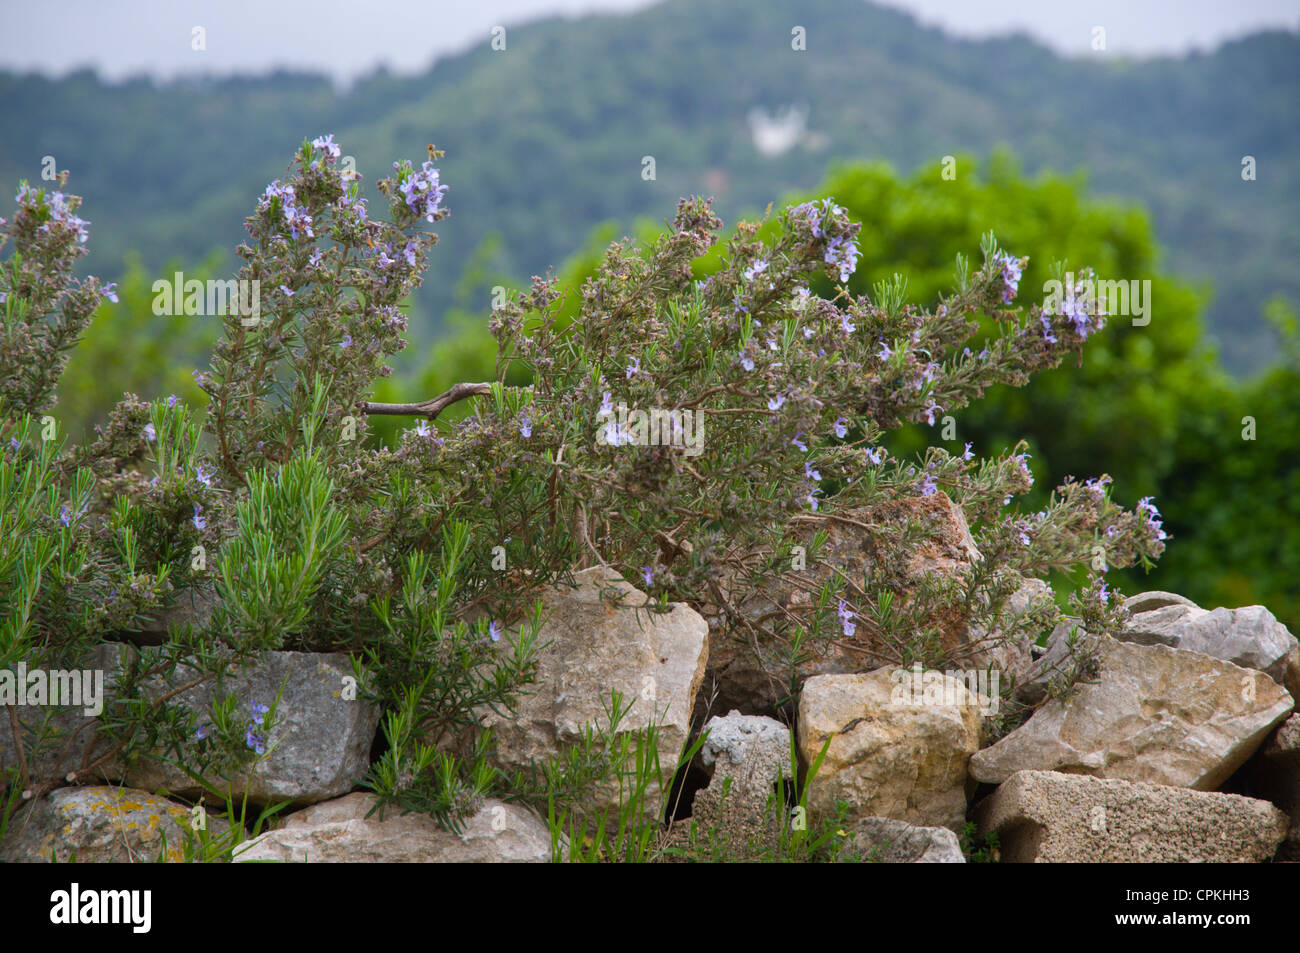 Lavendel Pflanze auf einer Steinmauer, die Aufteilung der Felder Stari Grad Hvar Island Kroatien Europas Stockfoto